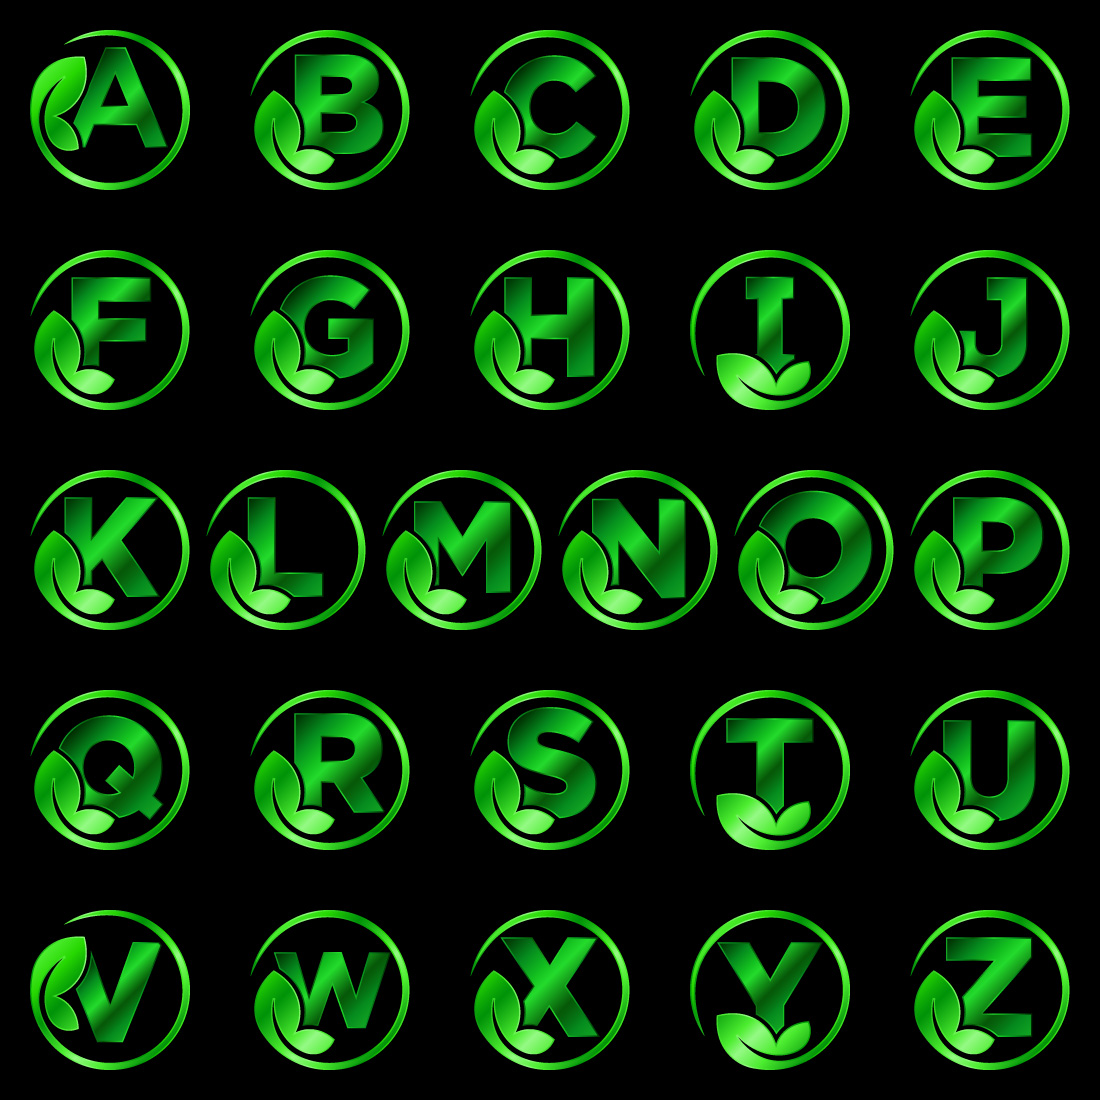 Initial A-Z monogram alphabet with leaf Eco-friendly logo concept Font emblem cover image.